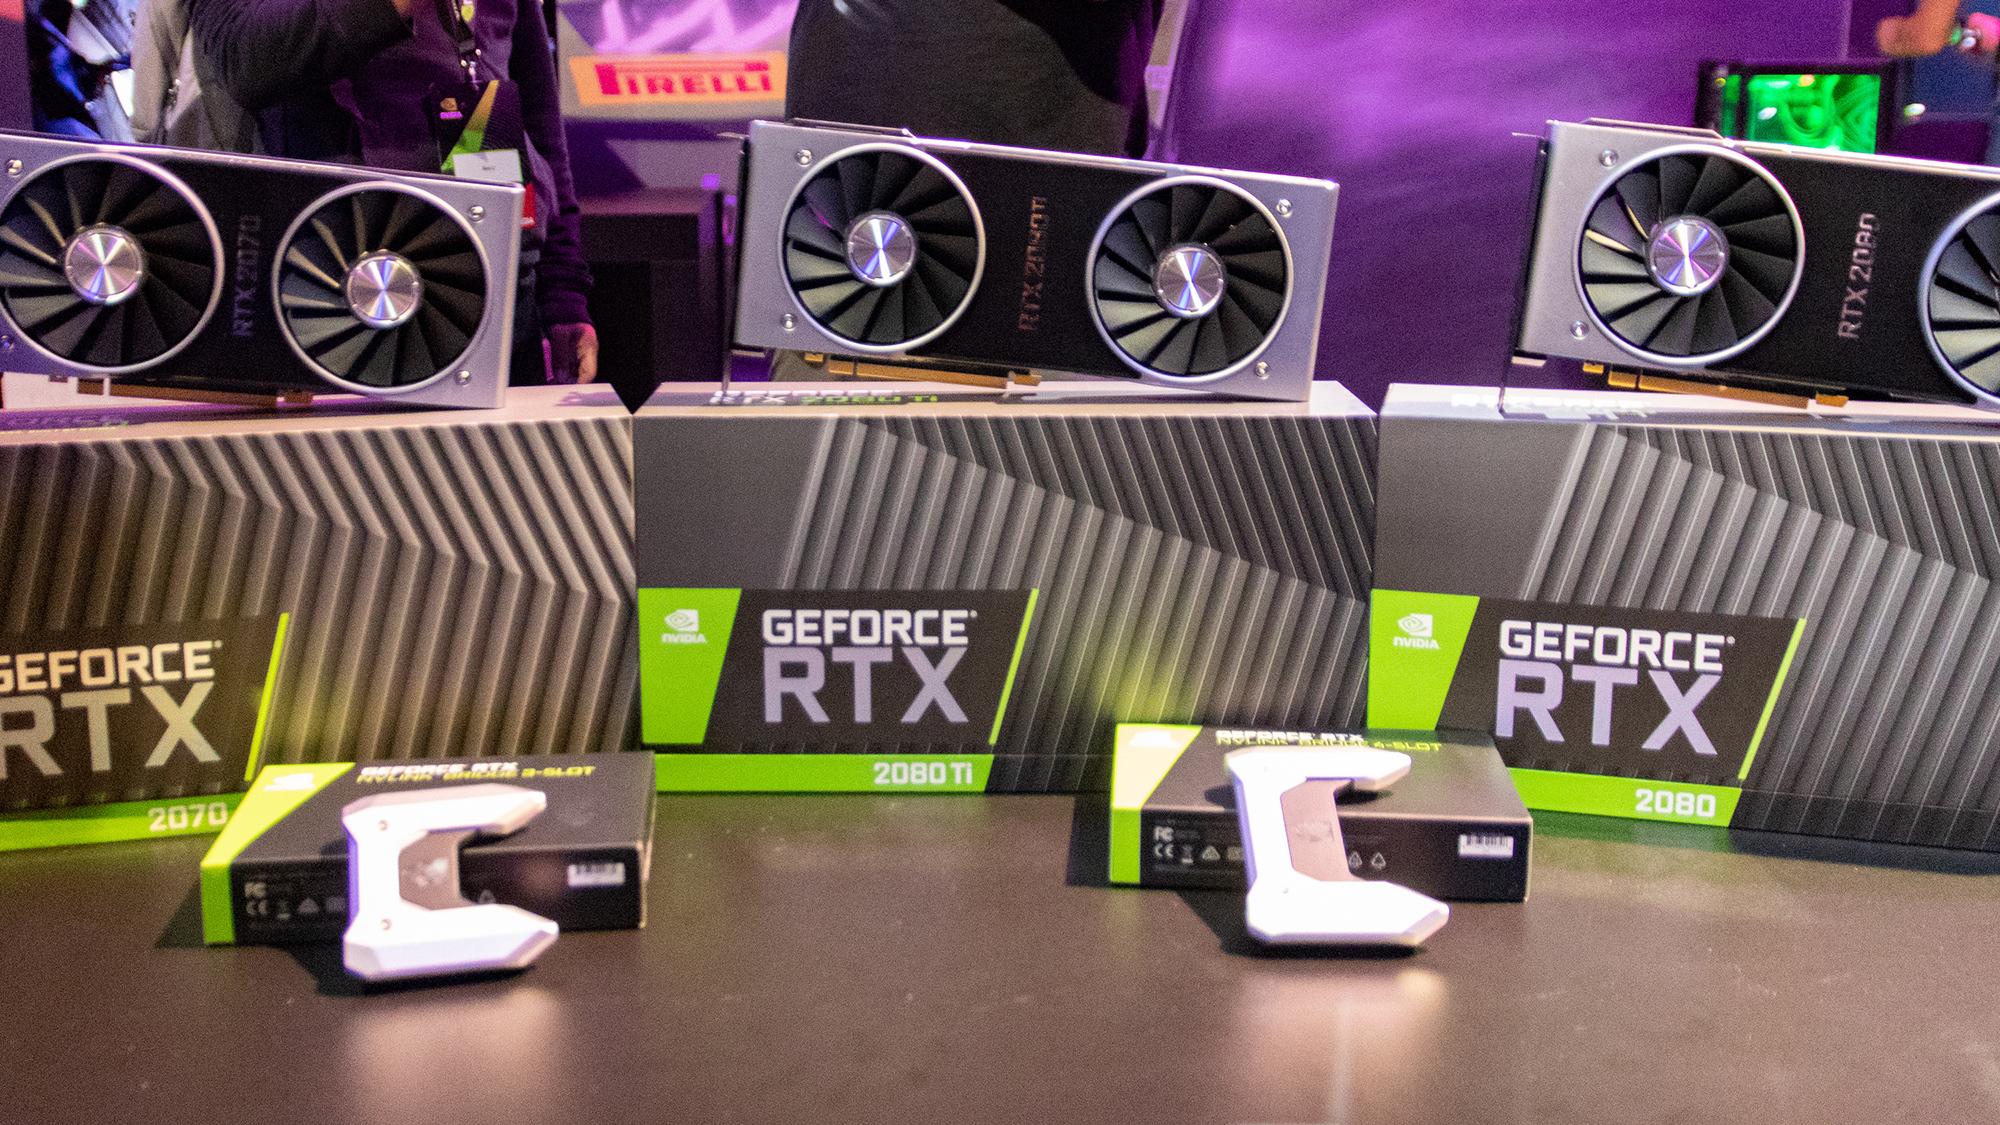 Så kraftige er Nvidias nye RTX 20-kort